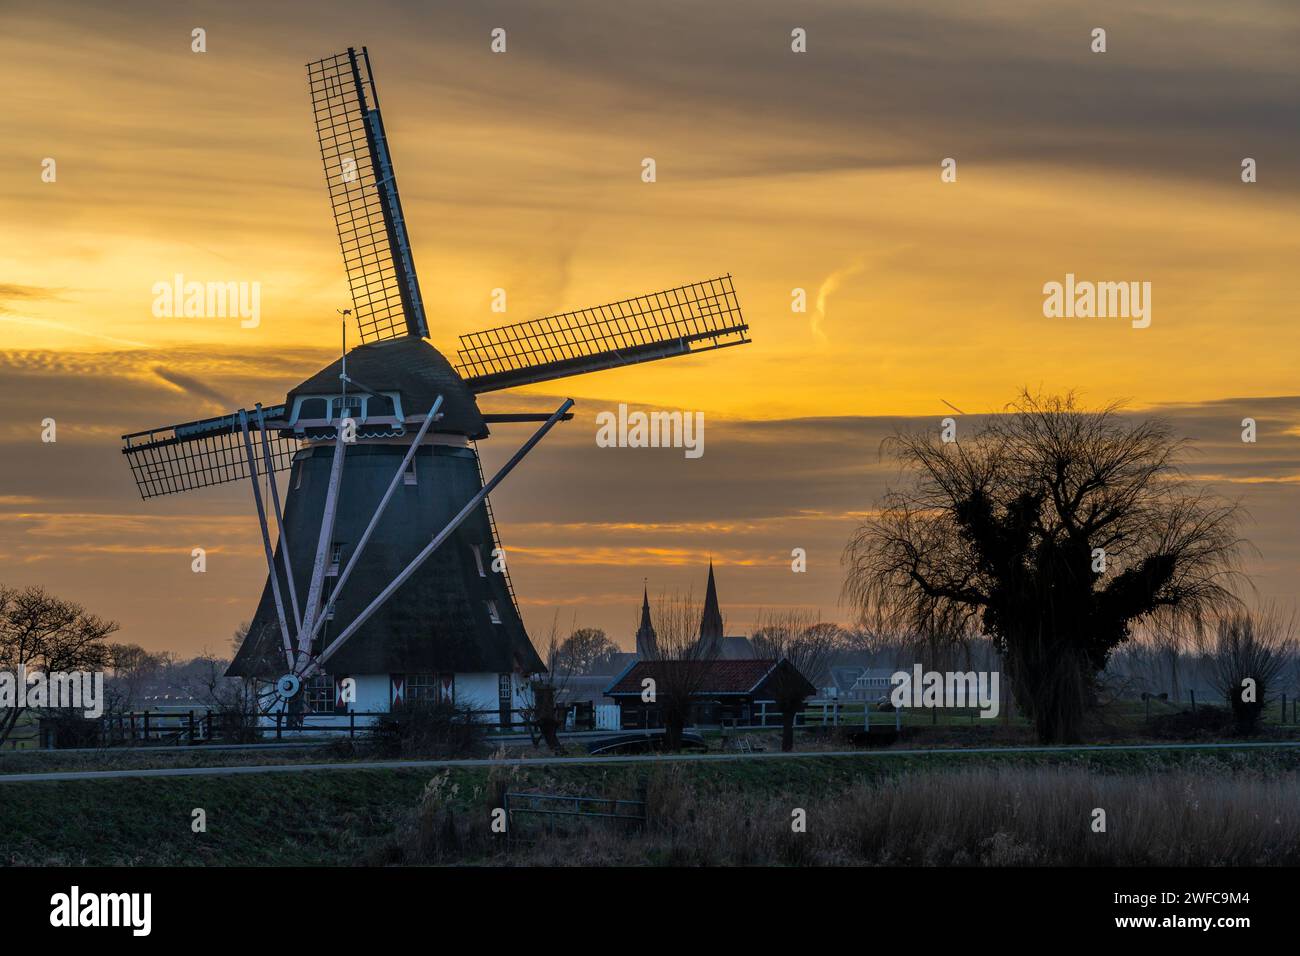 Abcoude, pays-Bas. Paysage hollandais typique avec moulin à vent traditionnel au coucher du soleil Banque D'Images